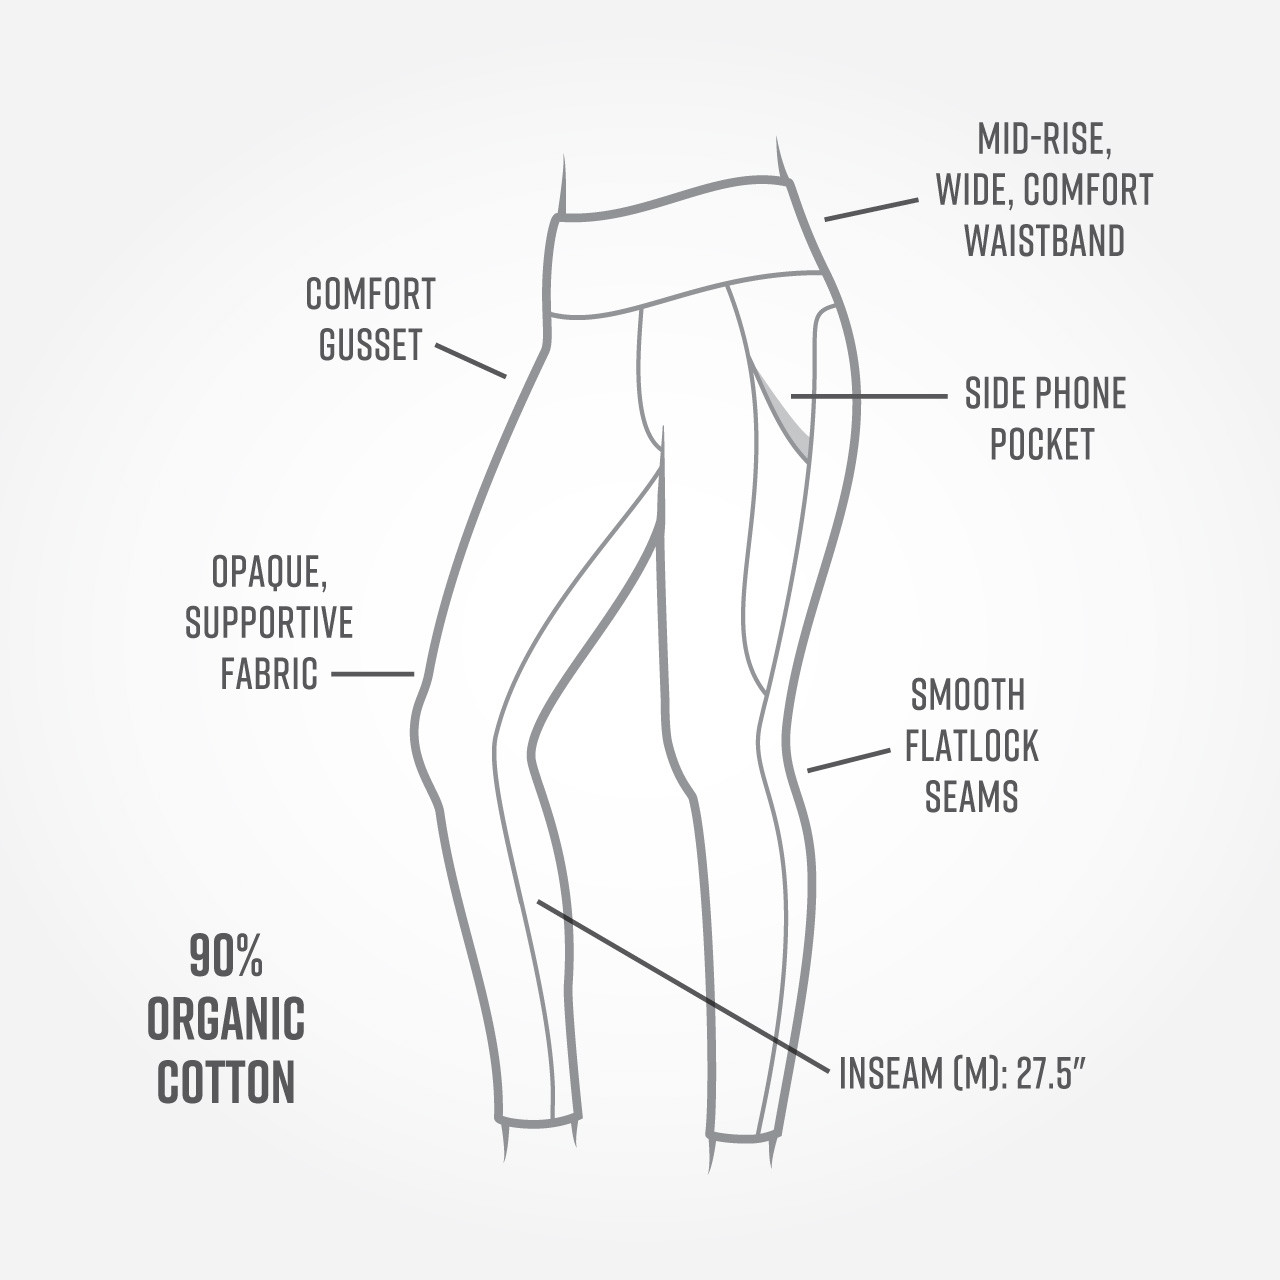 Buy Desi Mix Women Black Solid Cotton Ankle Length Leggings - Leggings for  Women 20279204